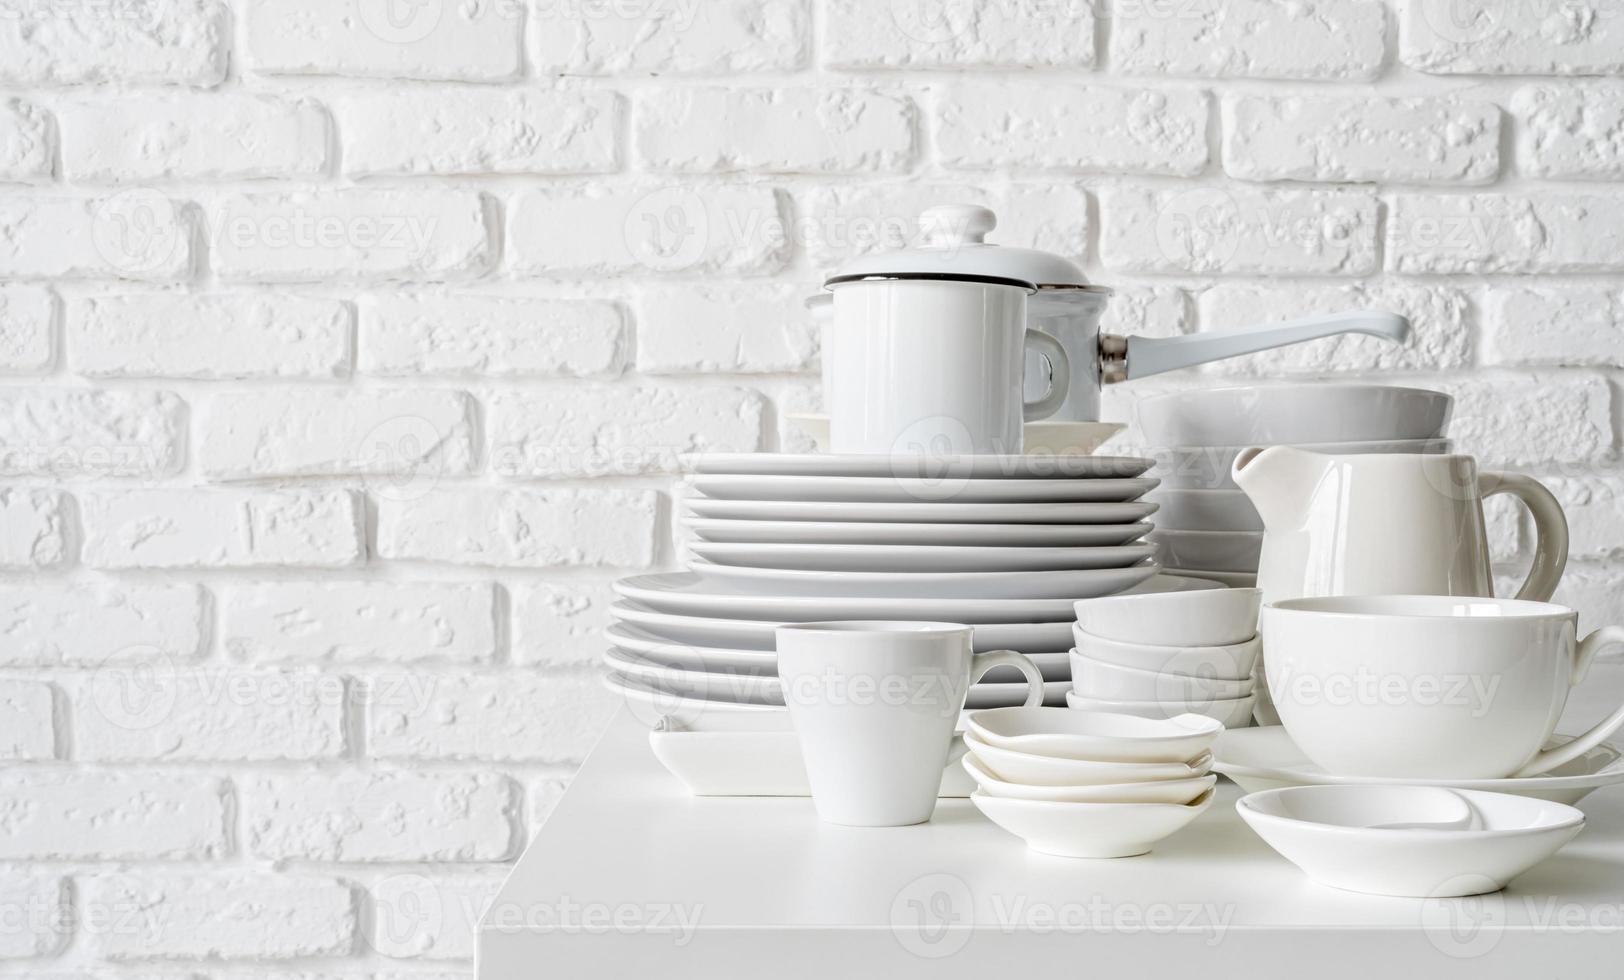 Stapel weißes keramisches Geschirr und Geschirr auf dem Tisch auf weißem Backsteinmauerhintergrund foto